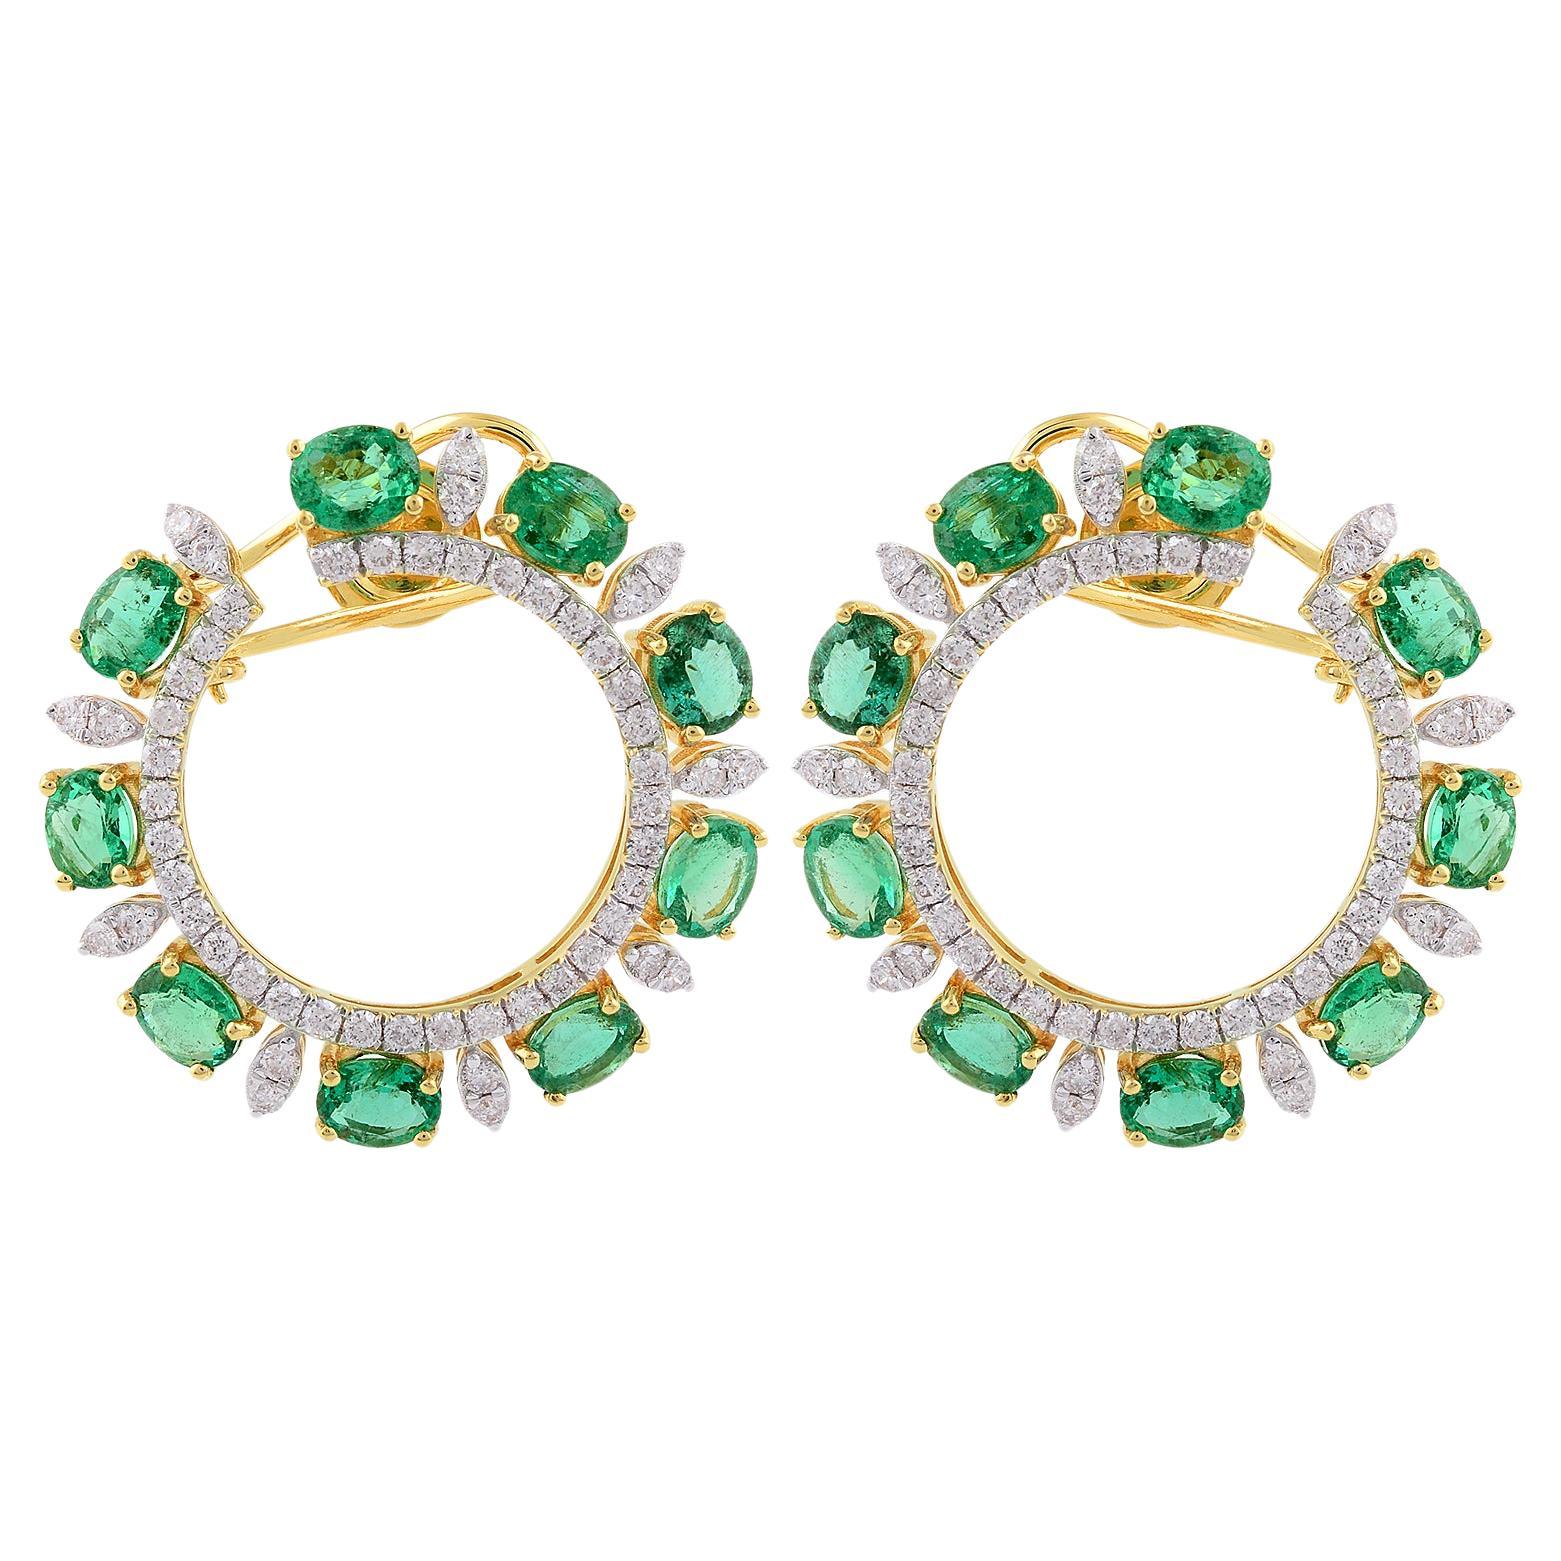 Oval Zambian Emerald Gemstone Lever Back Earrings Diamond 18 Karat Yellow Gold For Sale